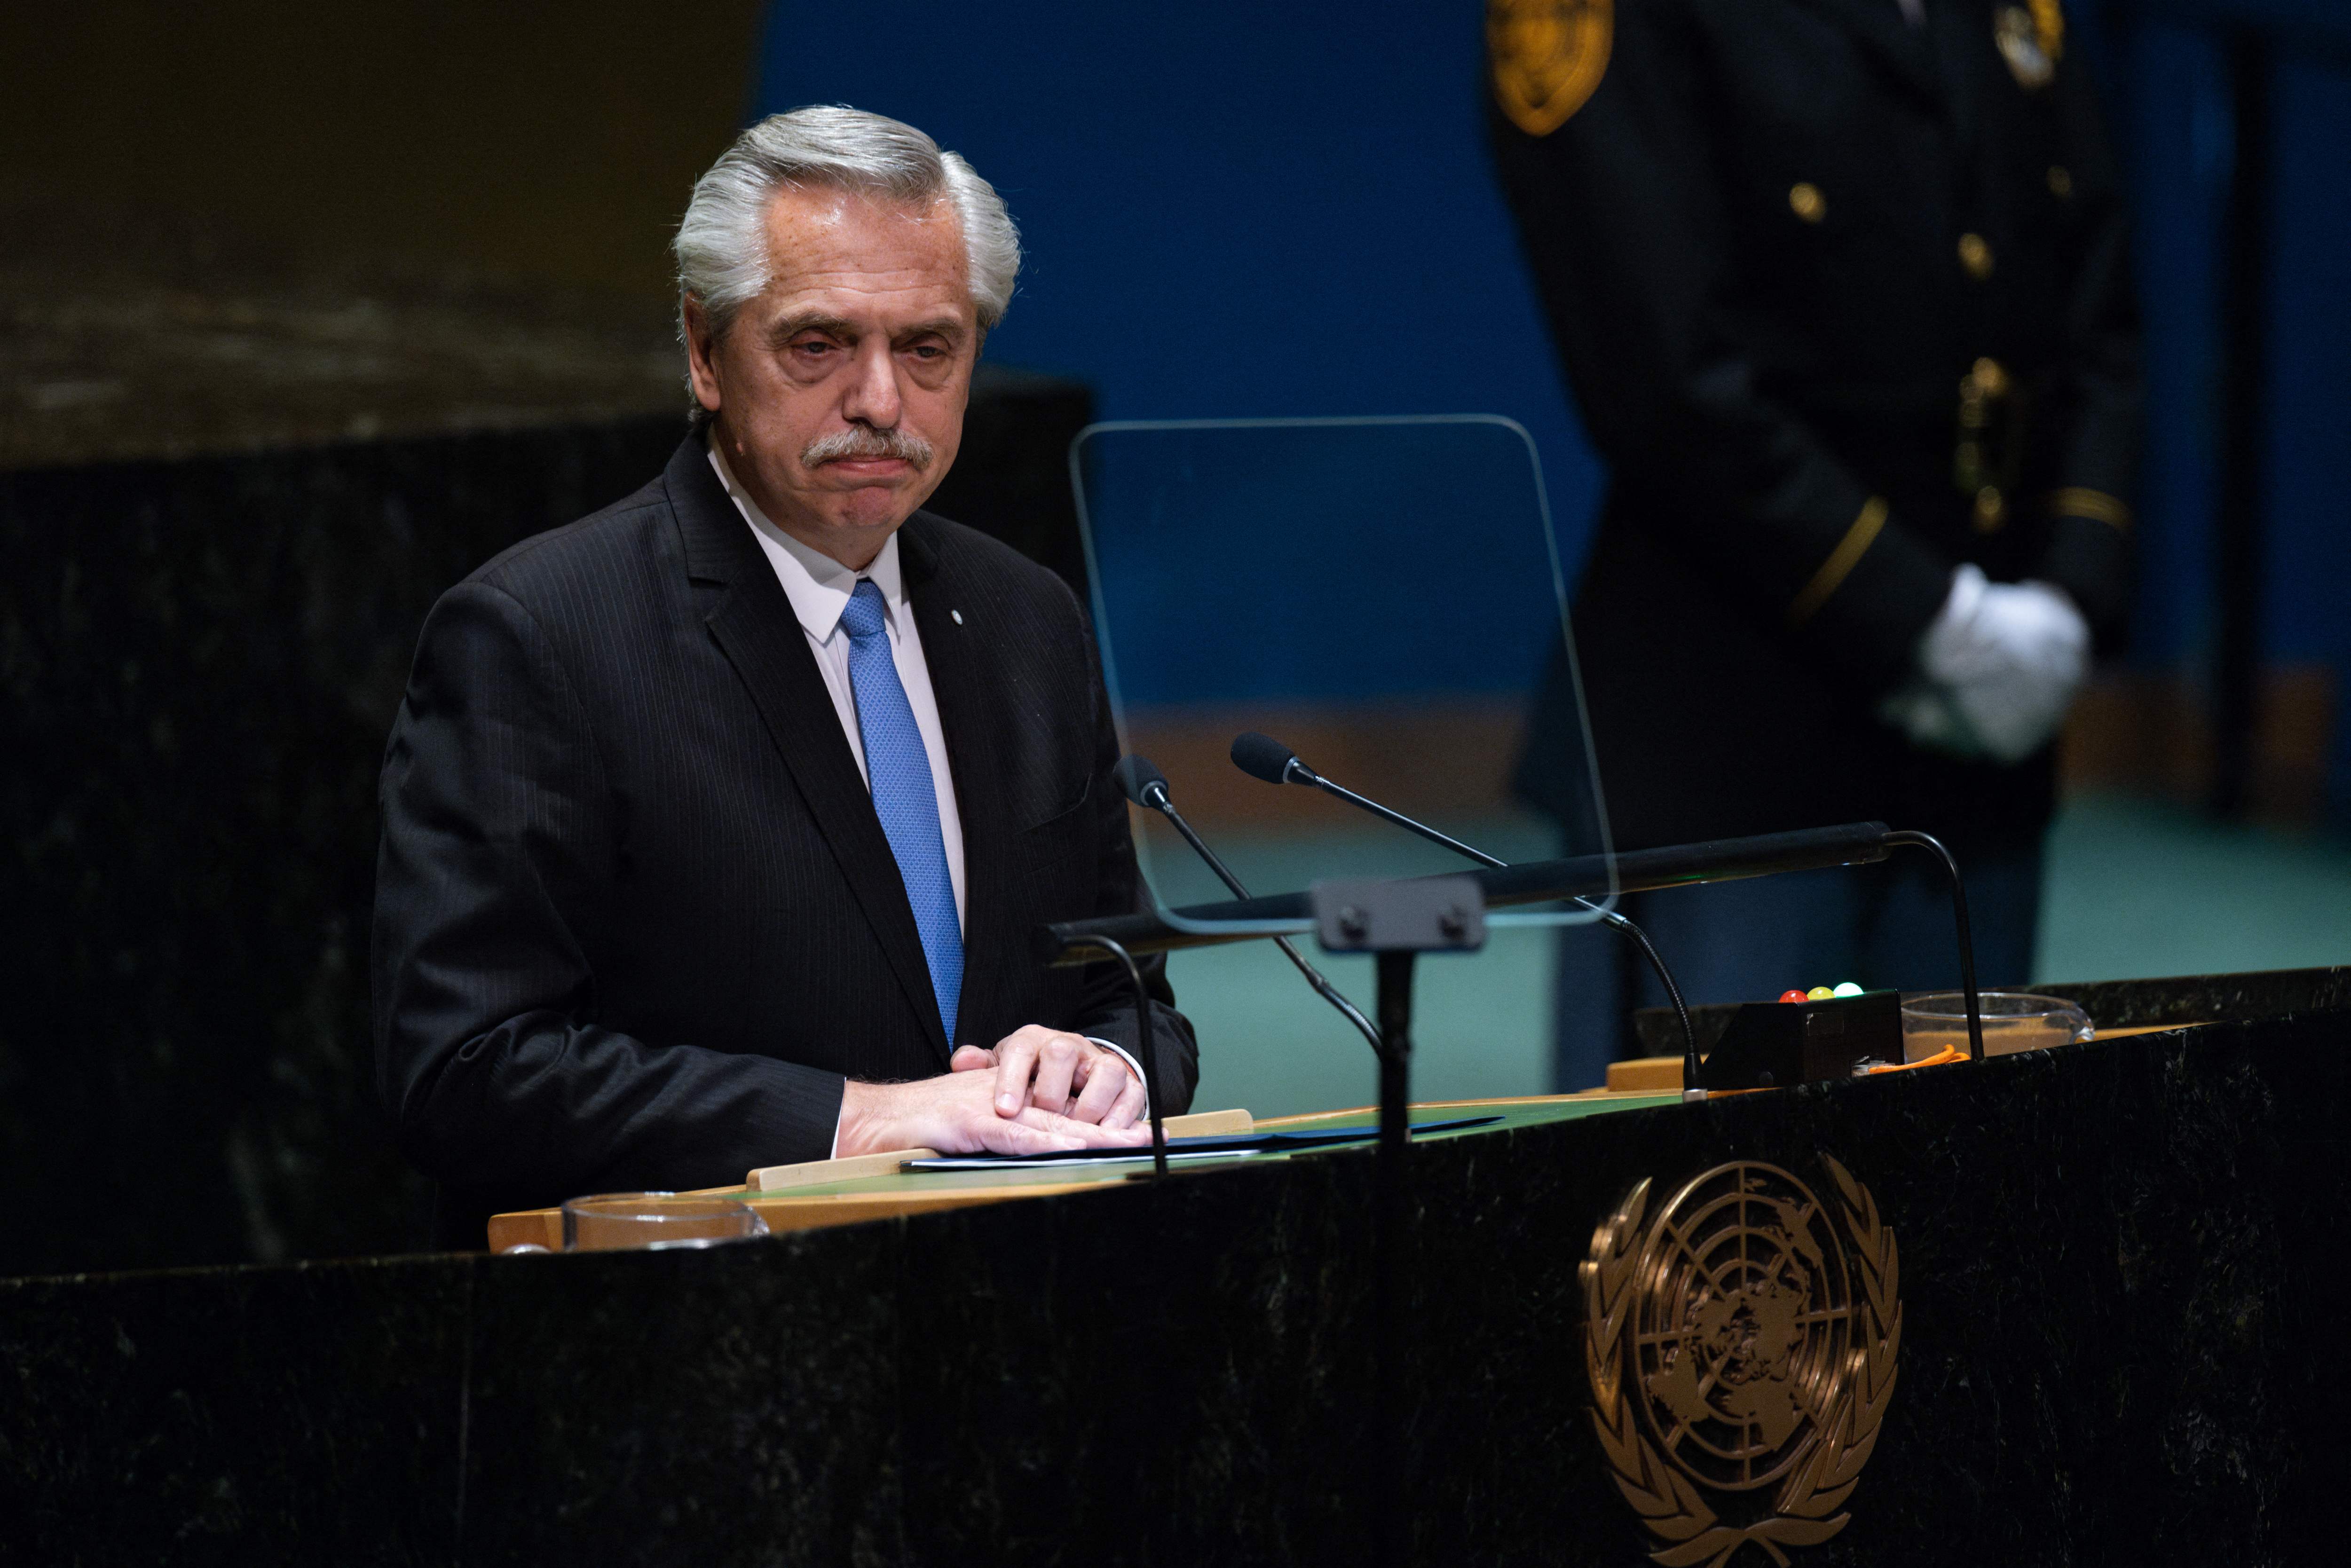 El presidente de Argentina, Alberto Fernández, expresó preocupación sobre la situación de Guatemala en la asamblea de las Naciones Unidas que se llevó a cabo este martes. (Foto Prensa Libre: Adam Gray / GETTY IMAGES NORTH AMERICA / Getty Images via AFP)